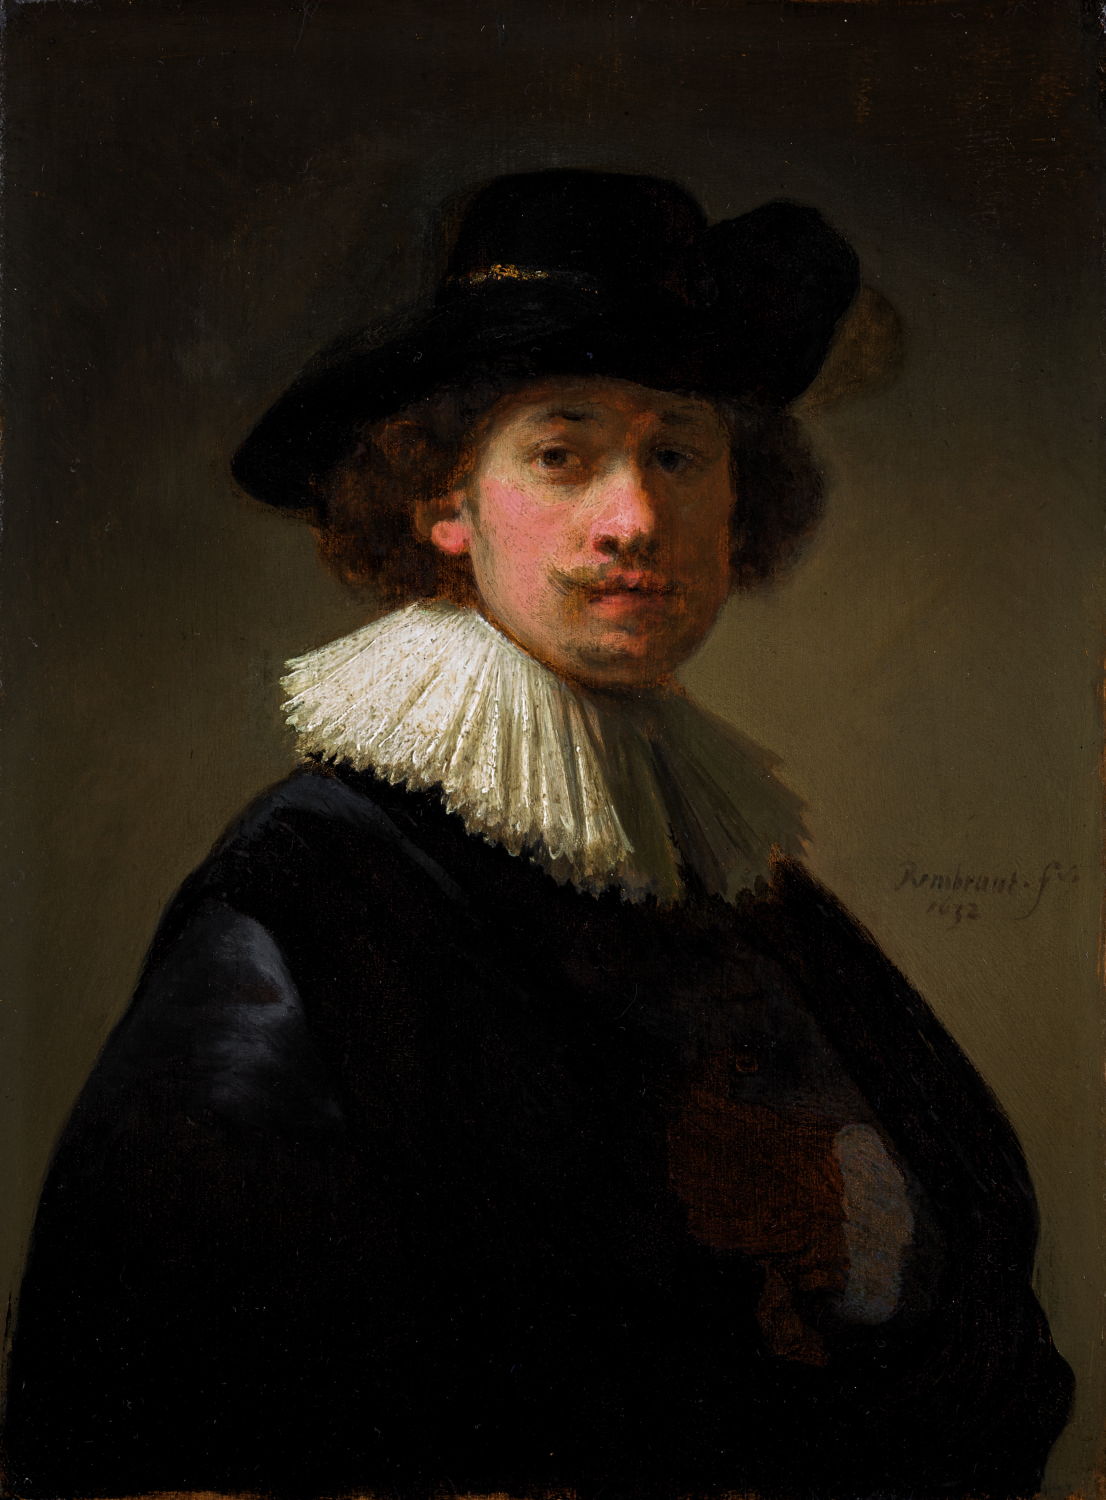 rembrandt-van-rijn-self-portrait-wearing-a-ruff-and-black-hat-1632-est-12-16-million-15-20-million-e1591612520241